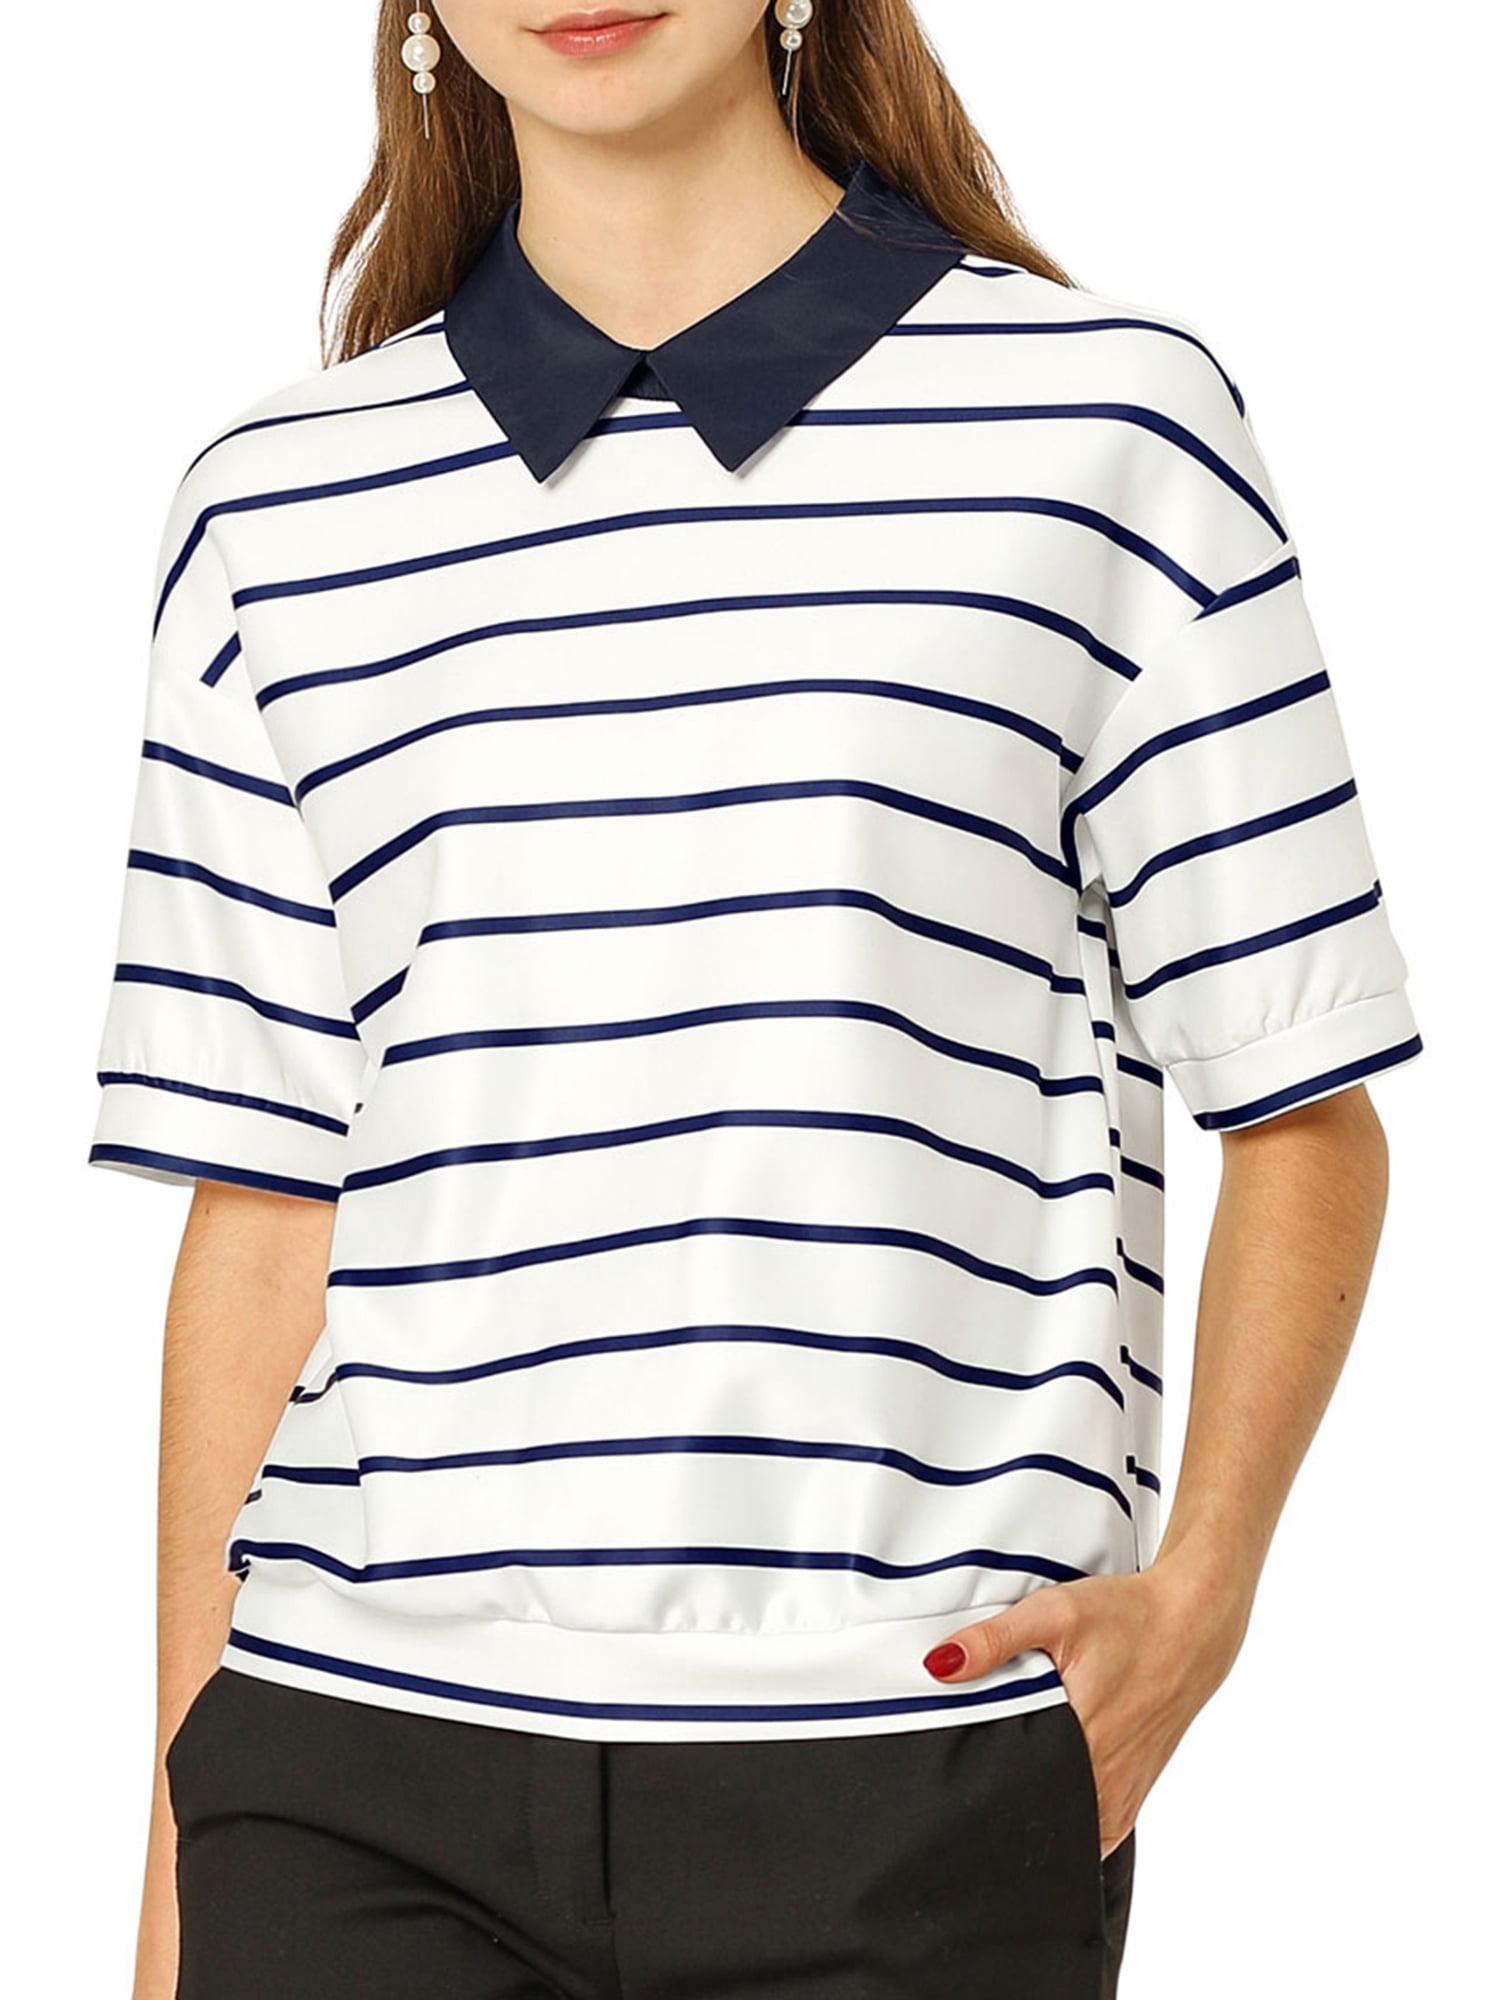 unique-bargains-women-s-striped-short-sleeve-button-back-polo-shirt-m